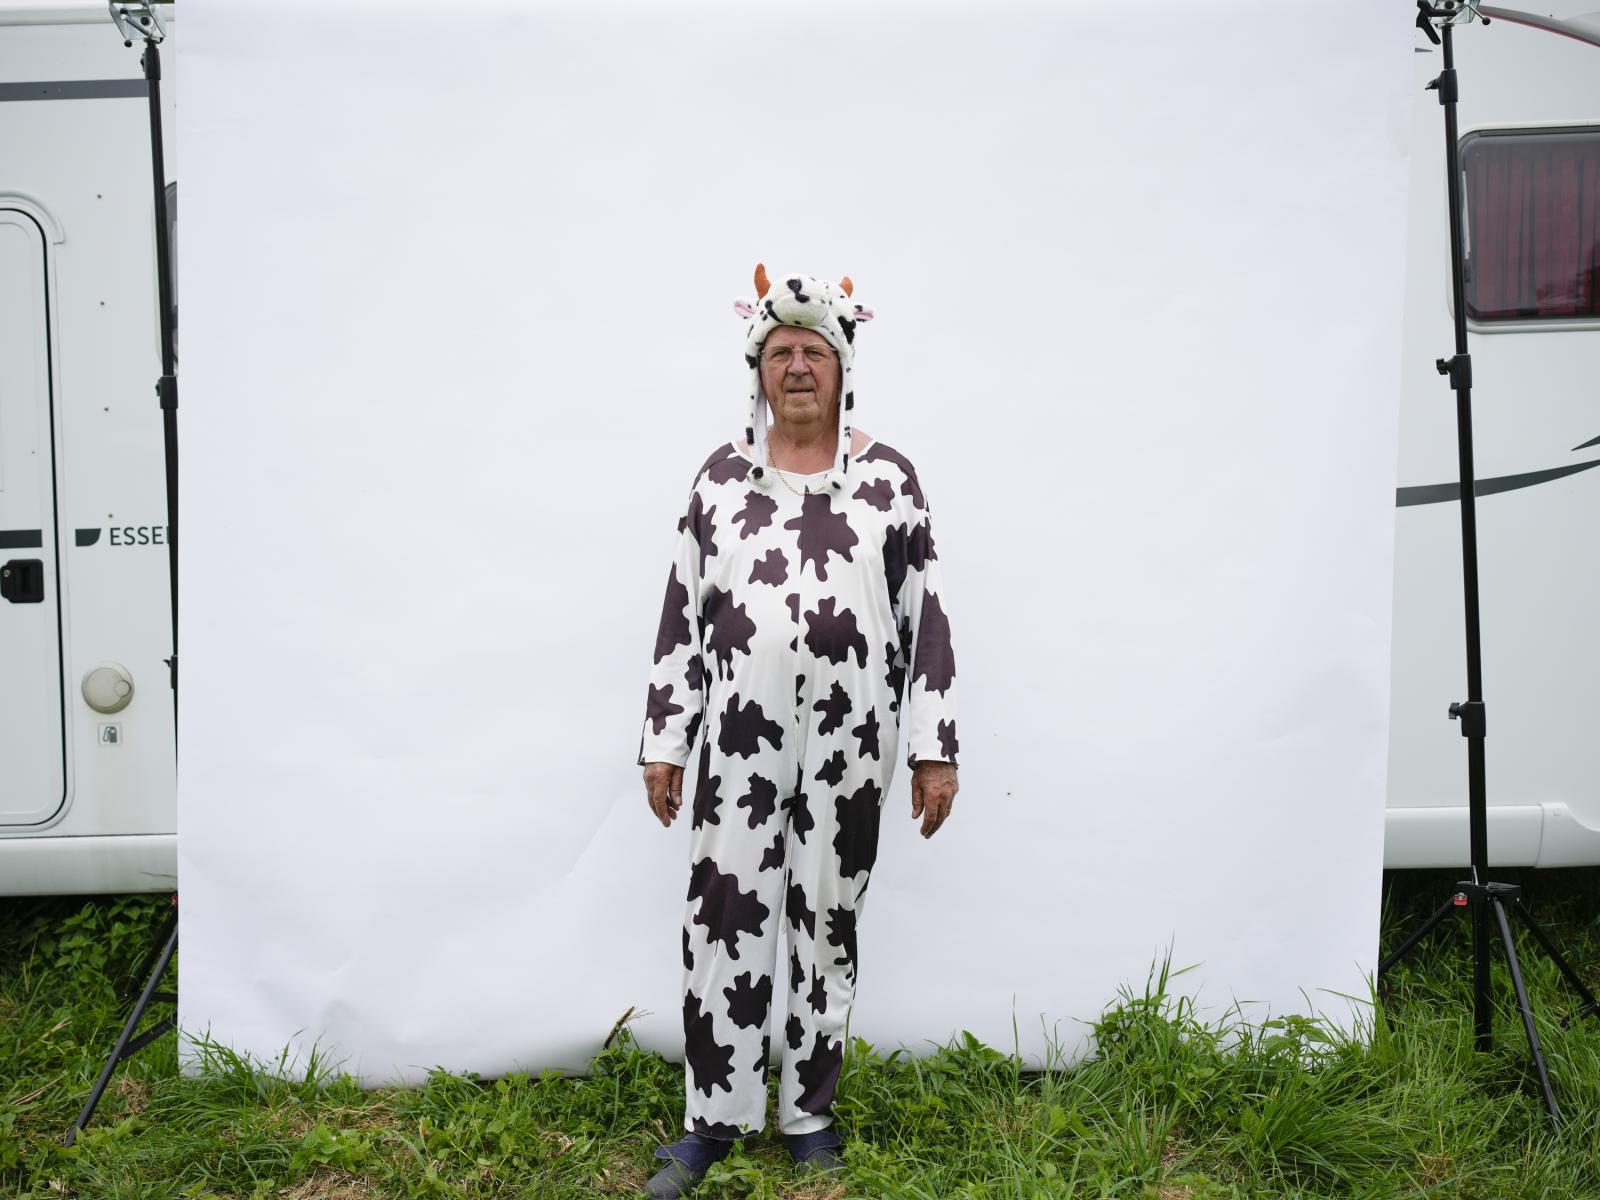 Tour De France - Roger Soreau poses for a portrait in his cow costume...